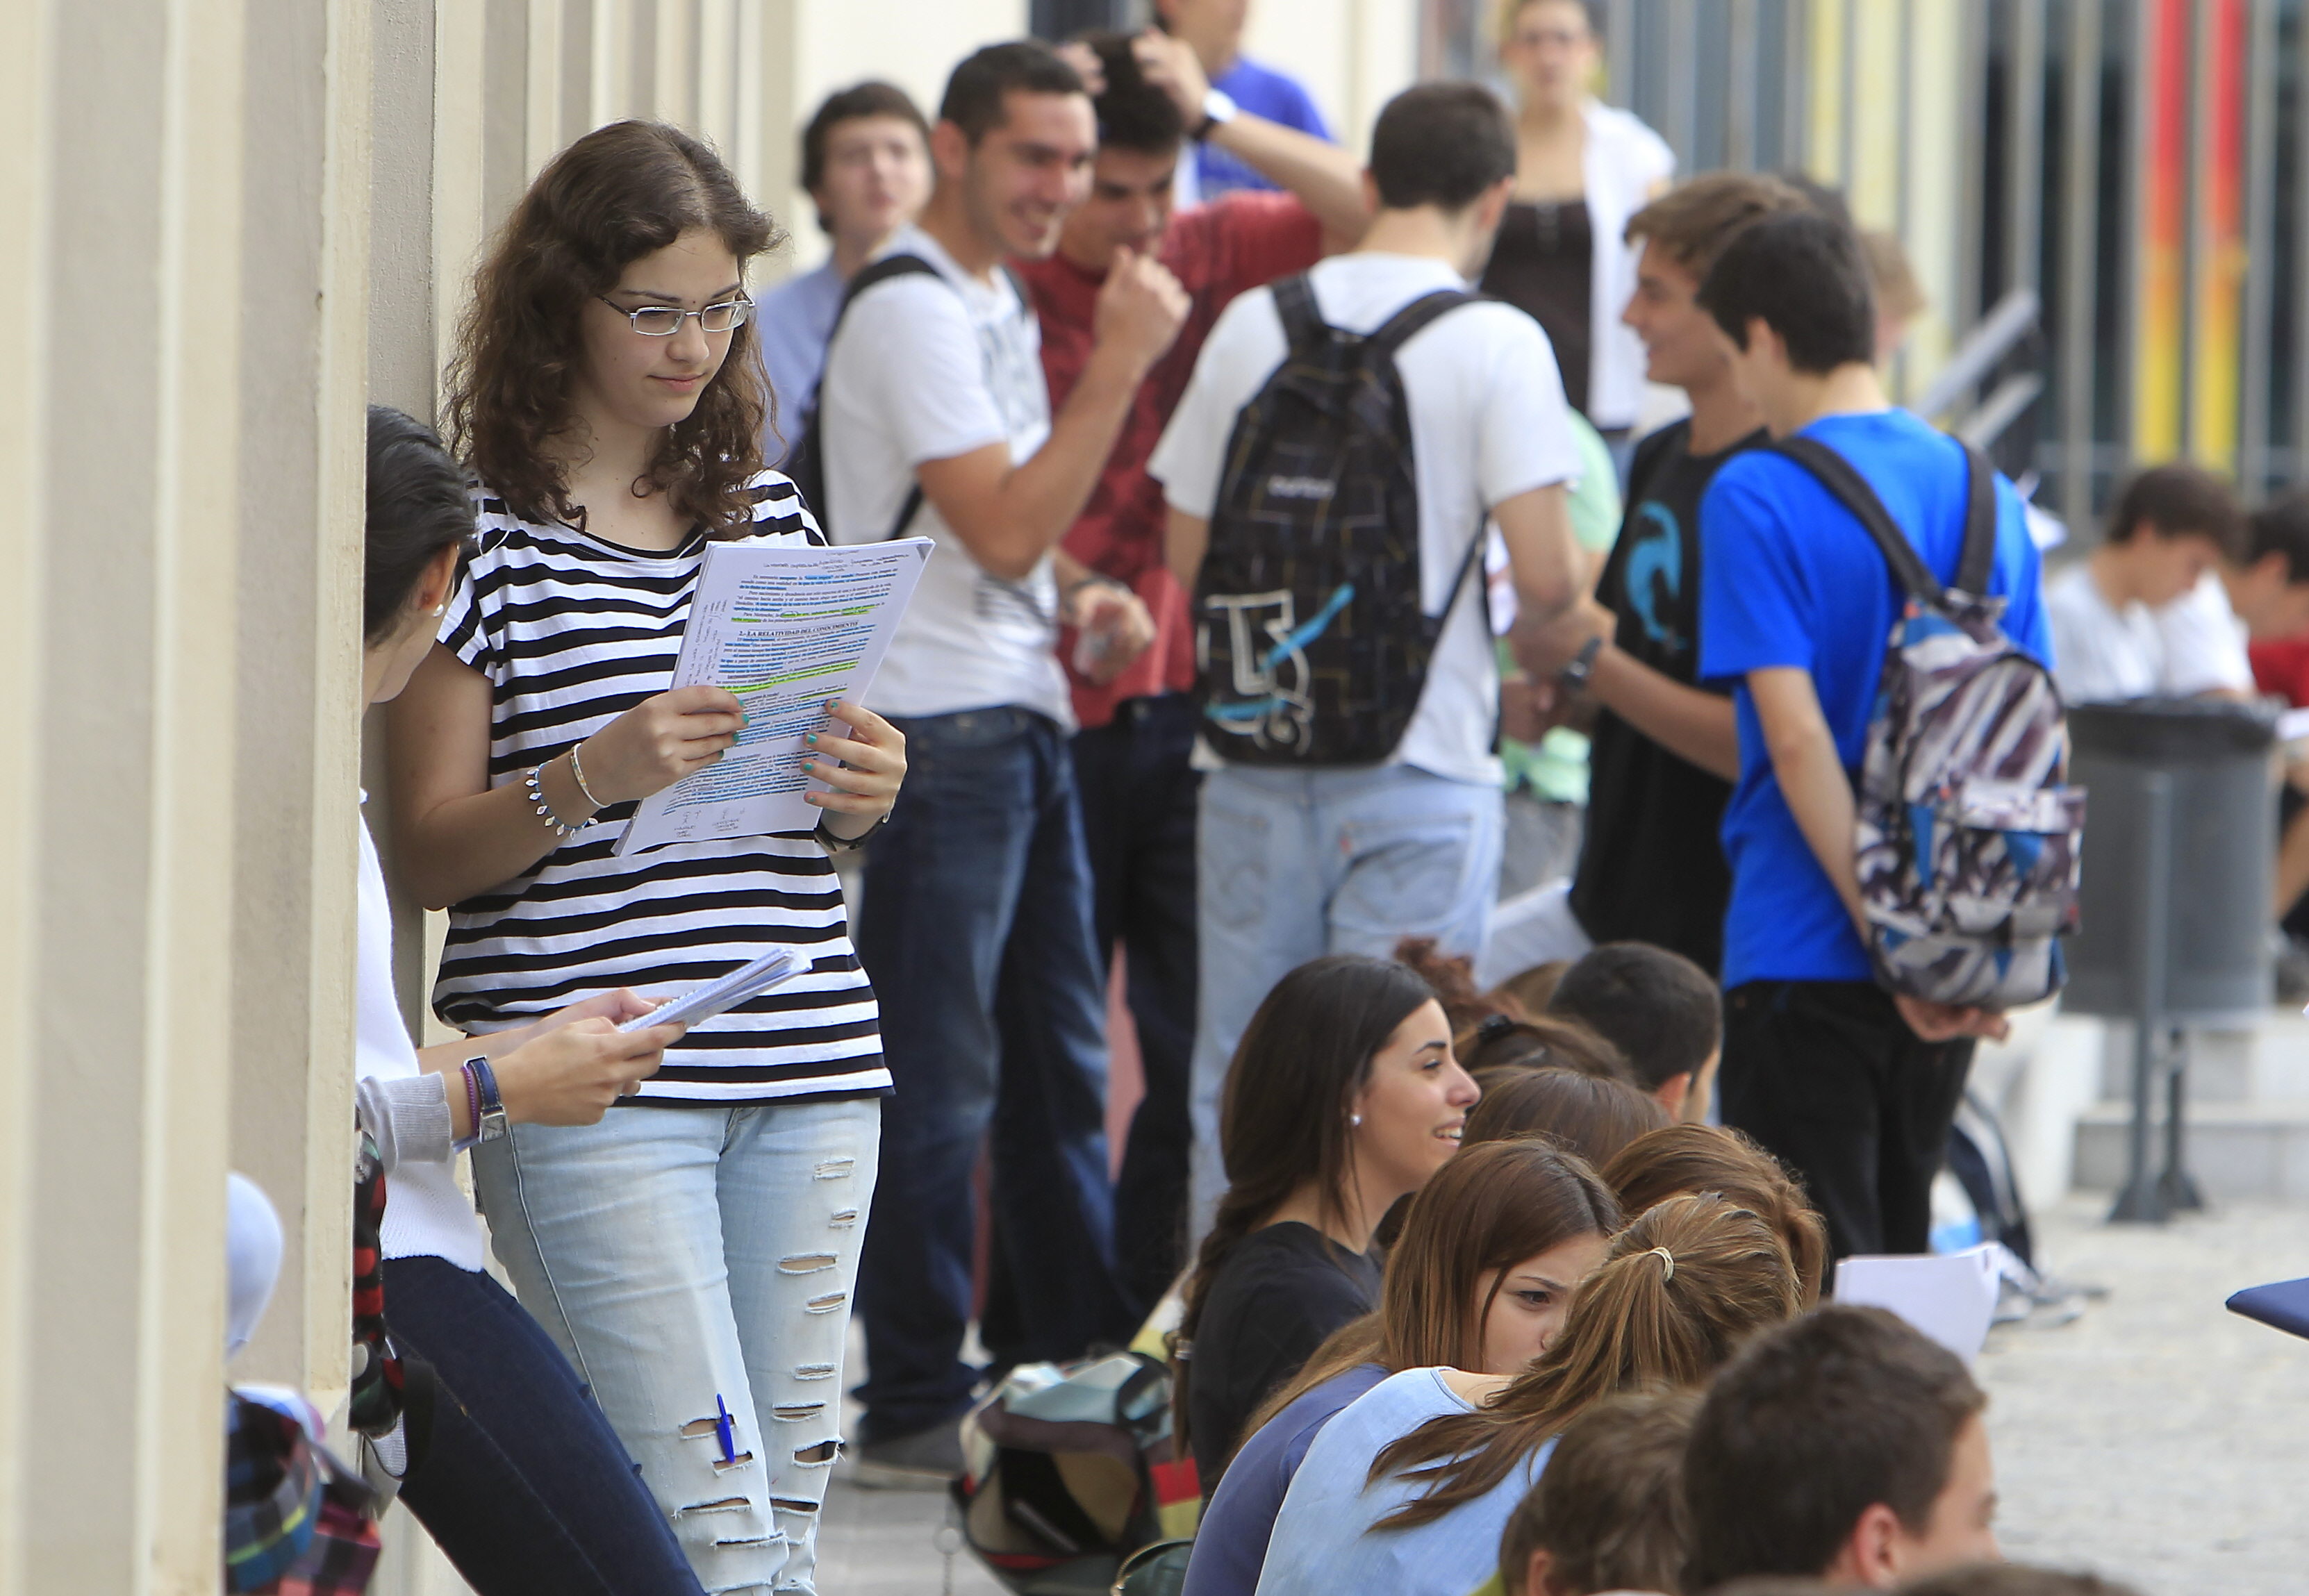 Bolonia abre puertas laborales a los universitarios pero falta flexibilidad horaria